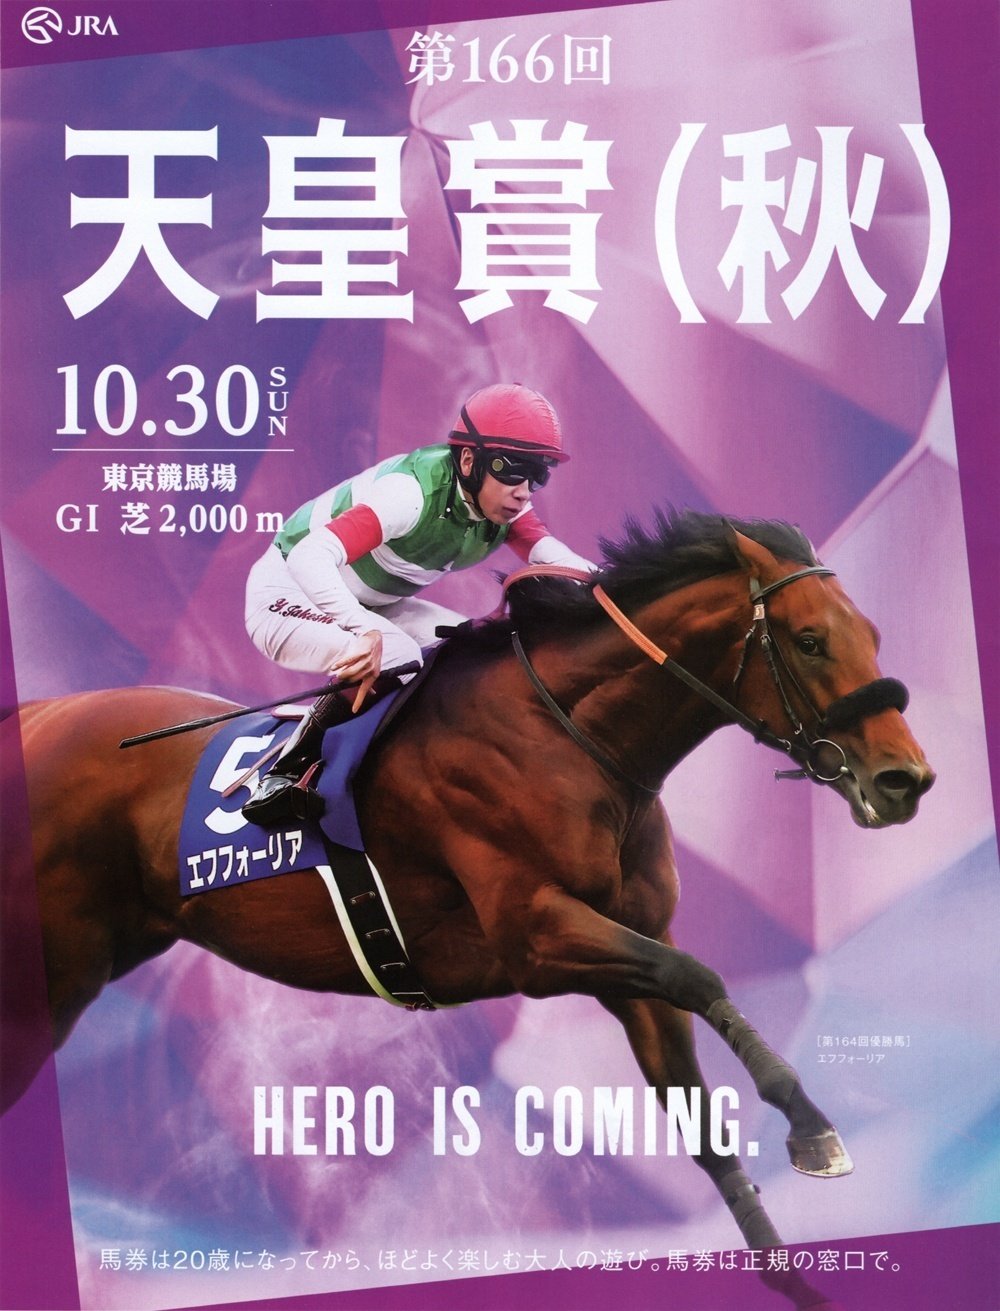 2022年10月30日に行われる秋の天皇賞のポスター画像です。紫色の謎の物体を背景にした昨年の優勝馬エフフォーリアと横山武史騎手が写っています。